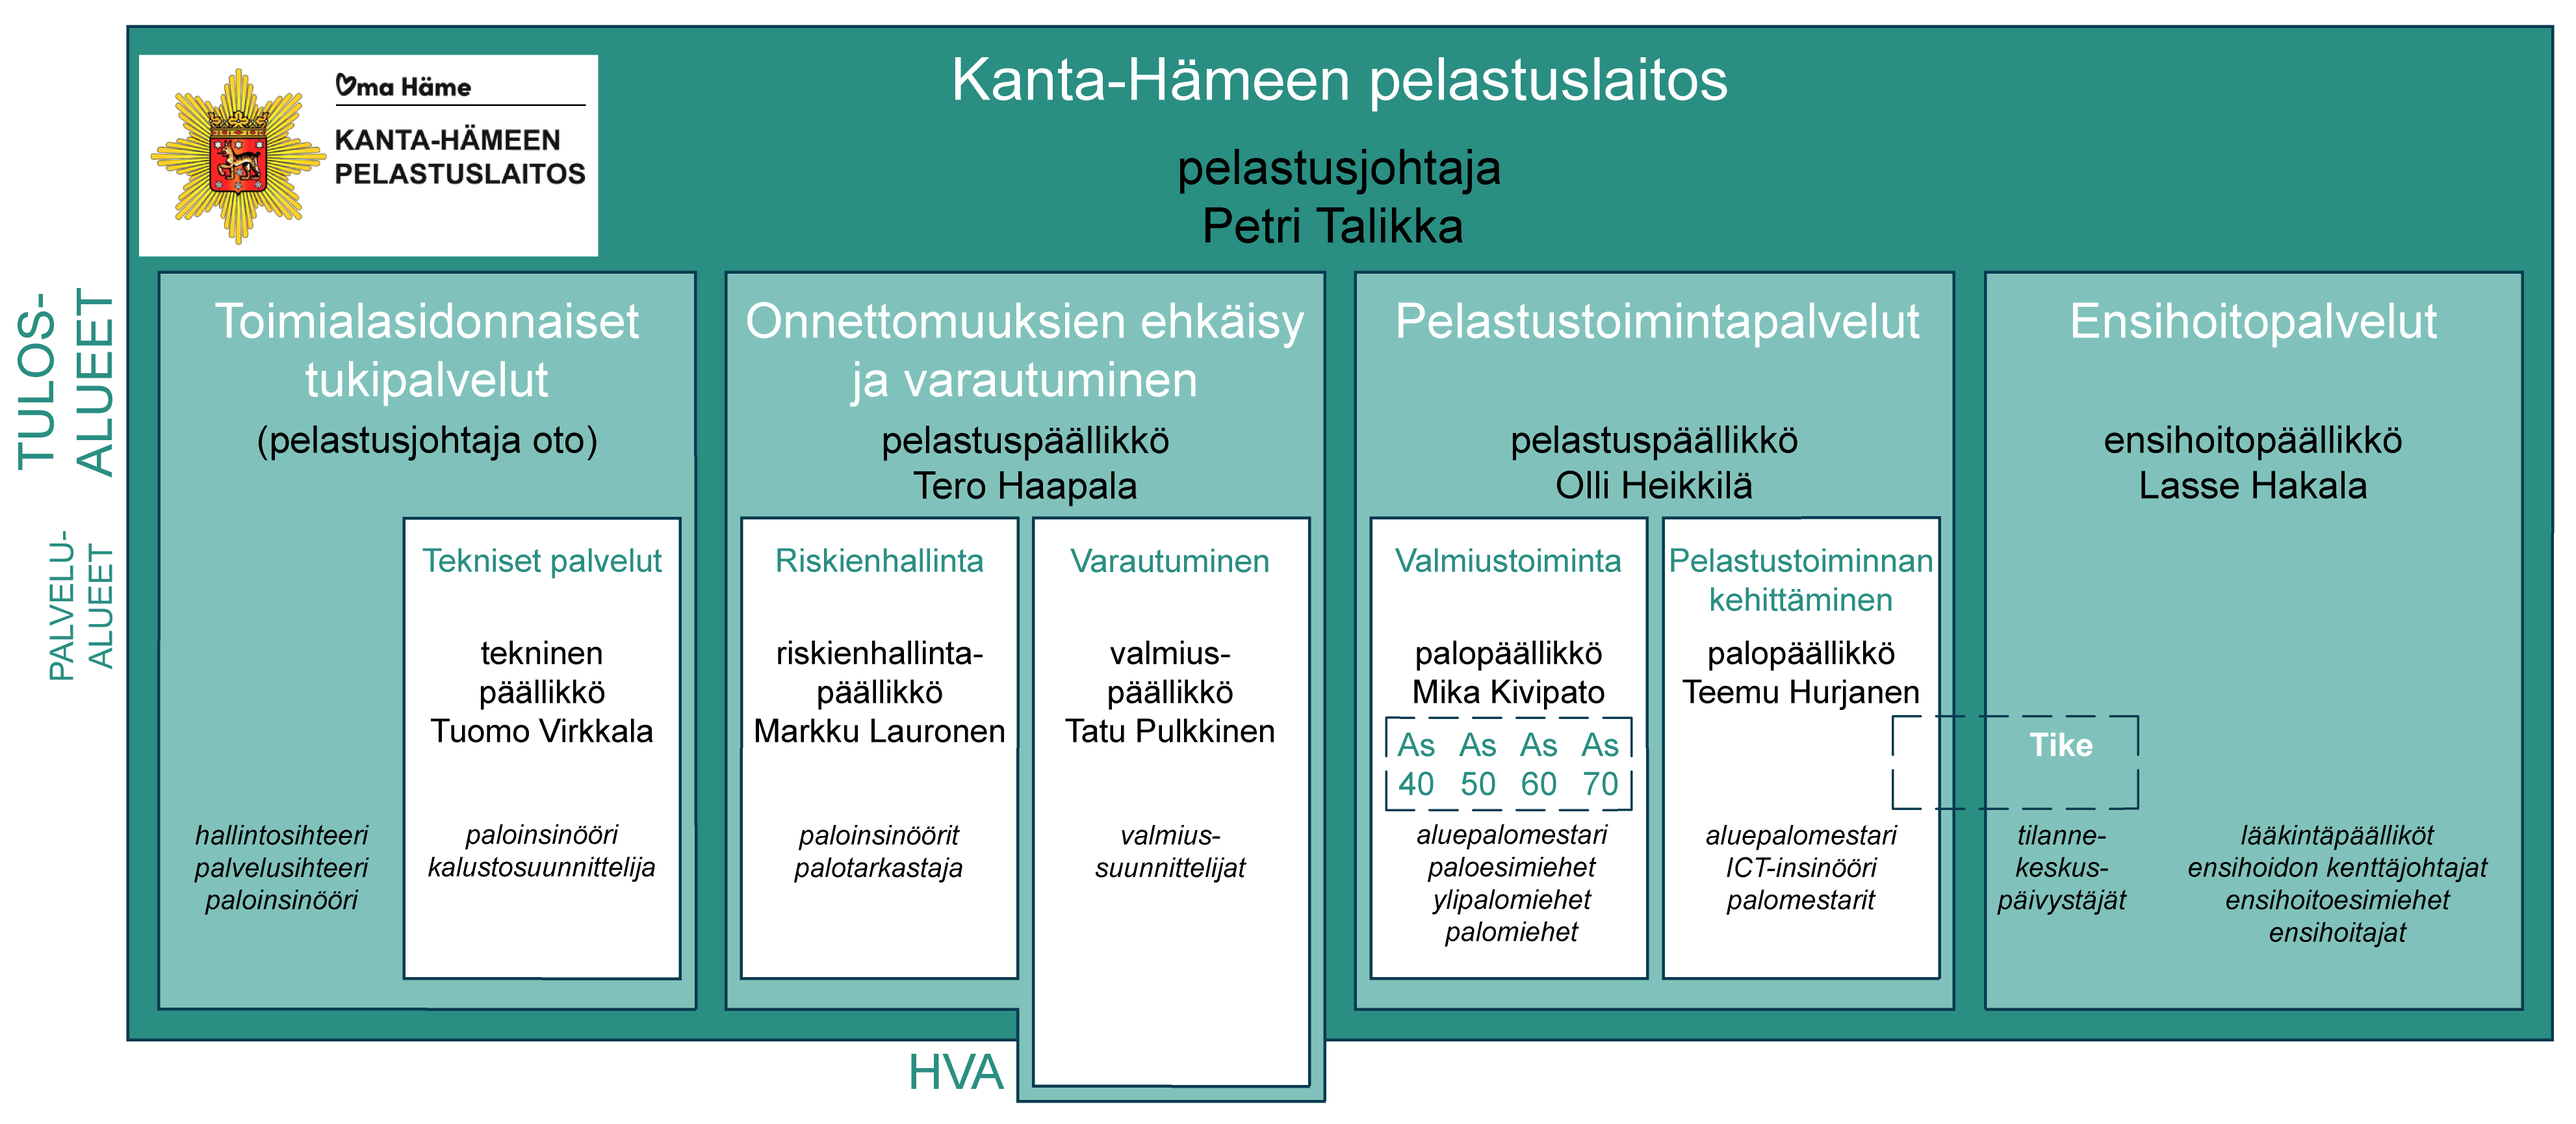 Kuvassa on Kanta-Hämeen pelastuslaitoksen organisaatio jaettuna neljään tulosalueeseen ja edelleen viiteen palvelualueeseen.